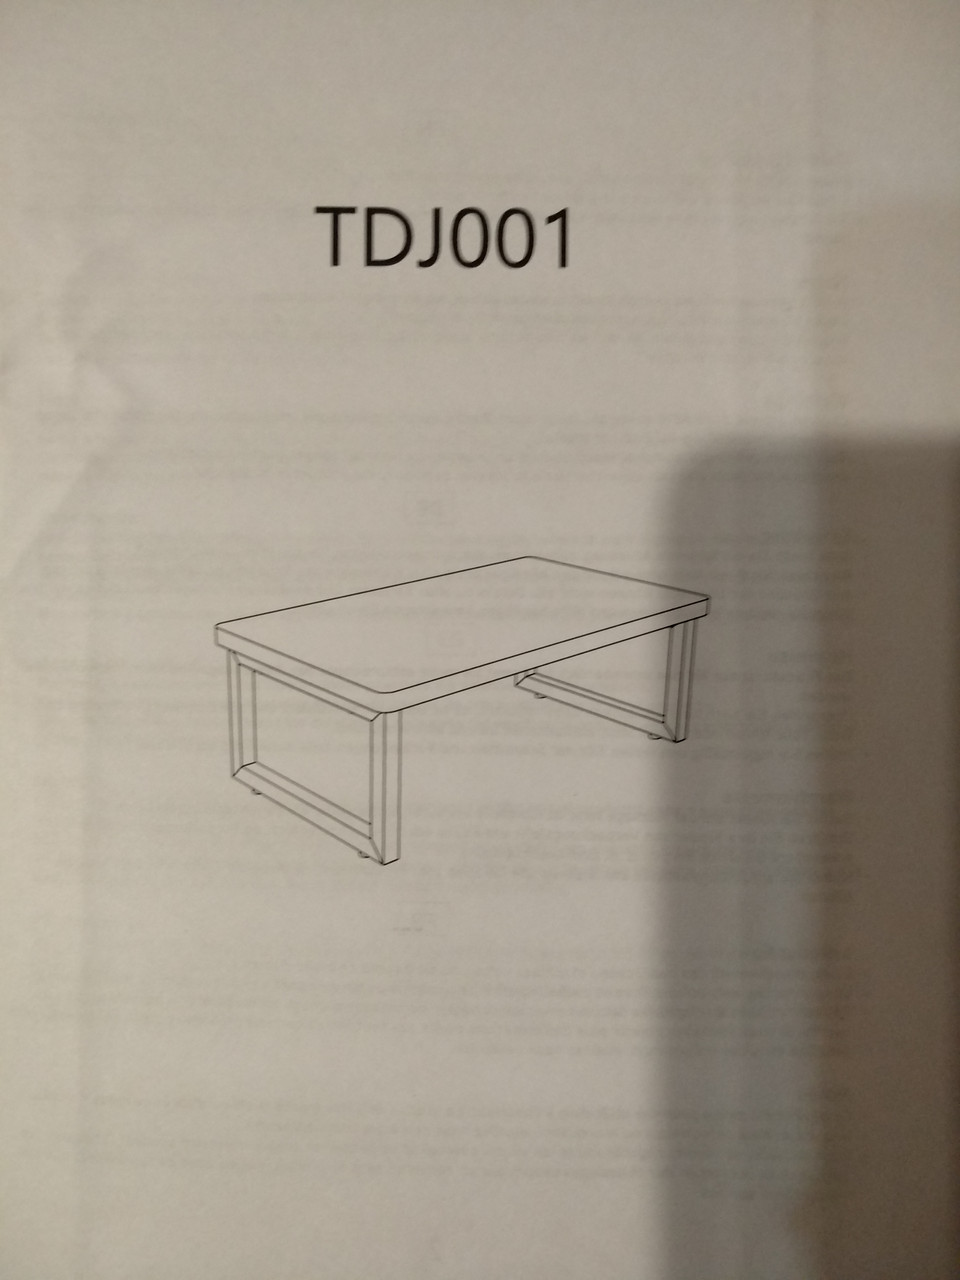 Приліжковий стіл TDJ001, Amazon, Німеччина